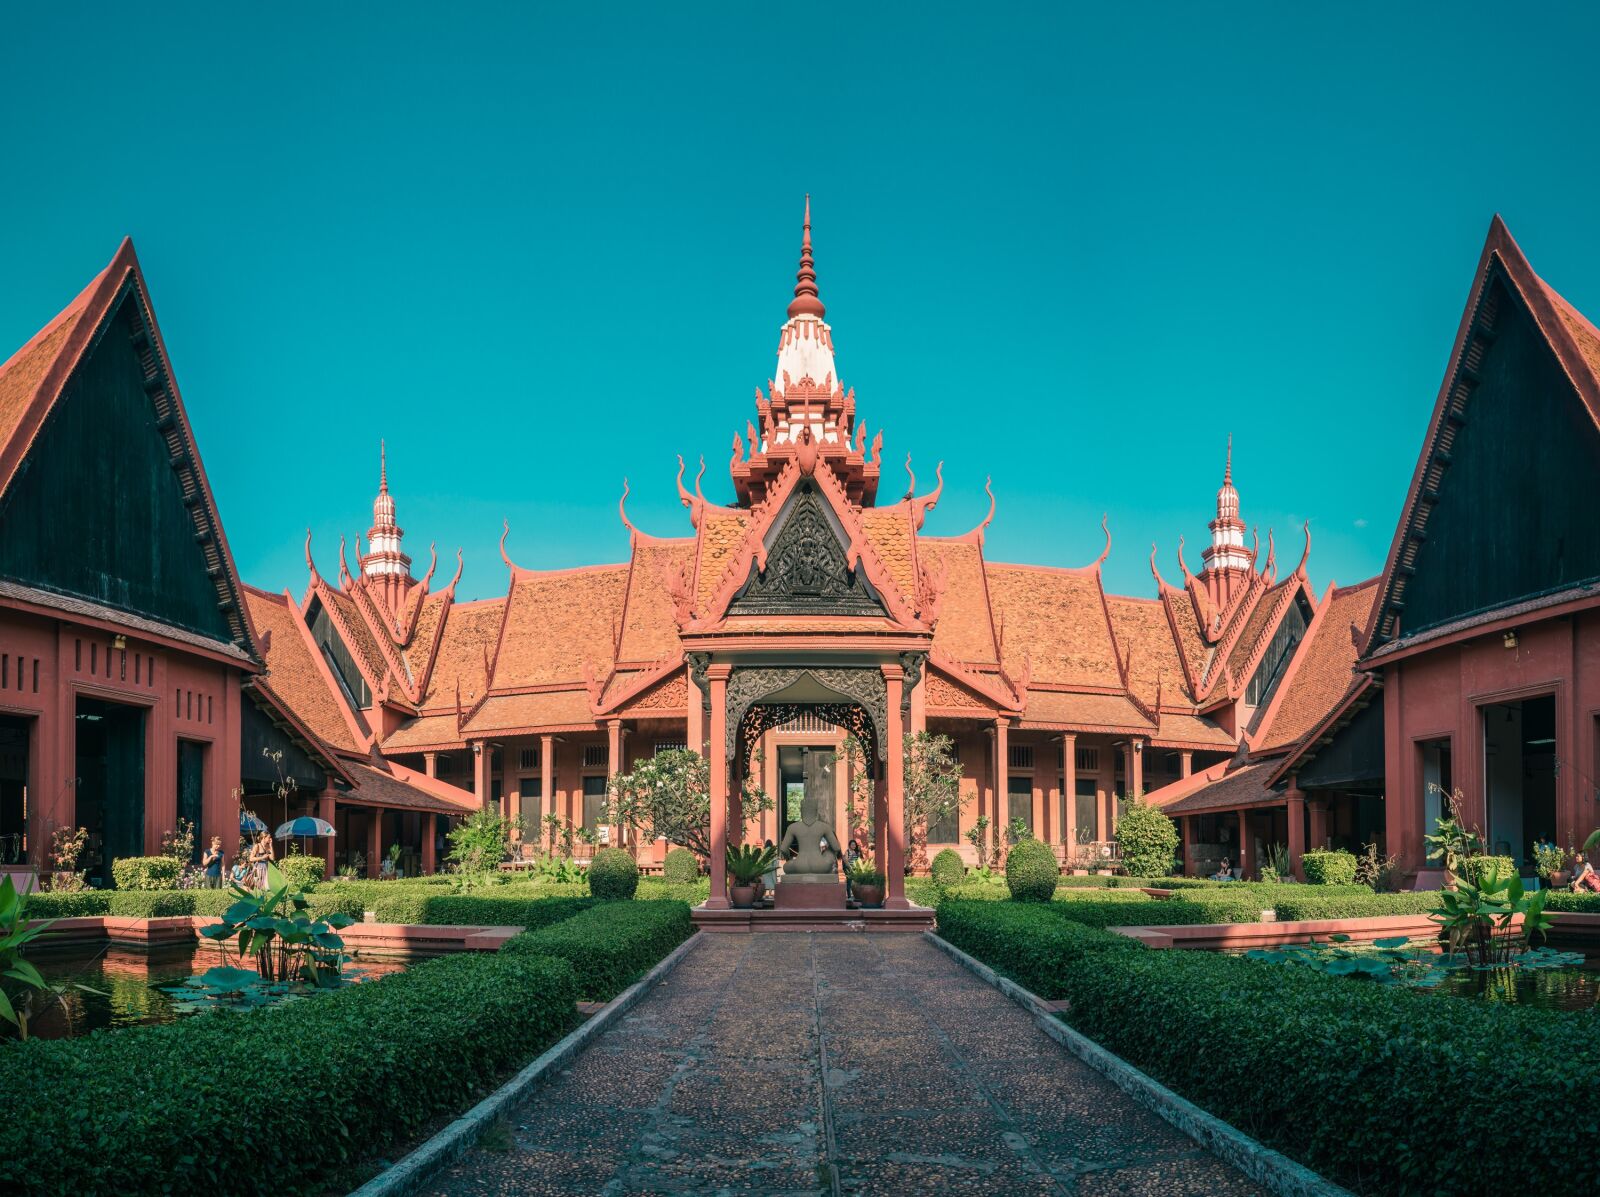 Sony a6000 + Sony E 16mm F2.8 sample photo. Cambodia, phnom penh, national photography